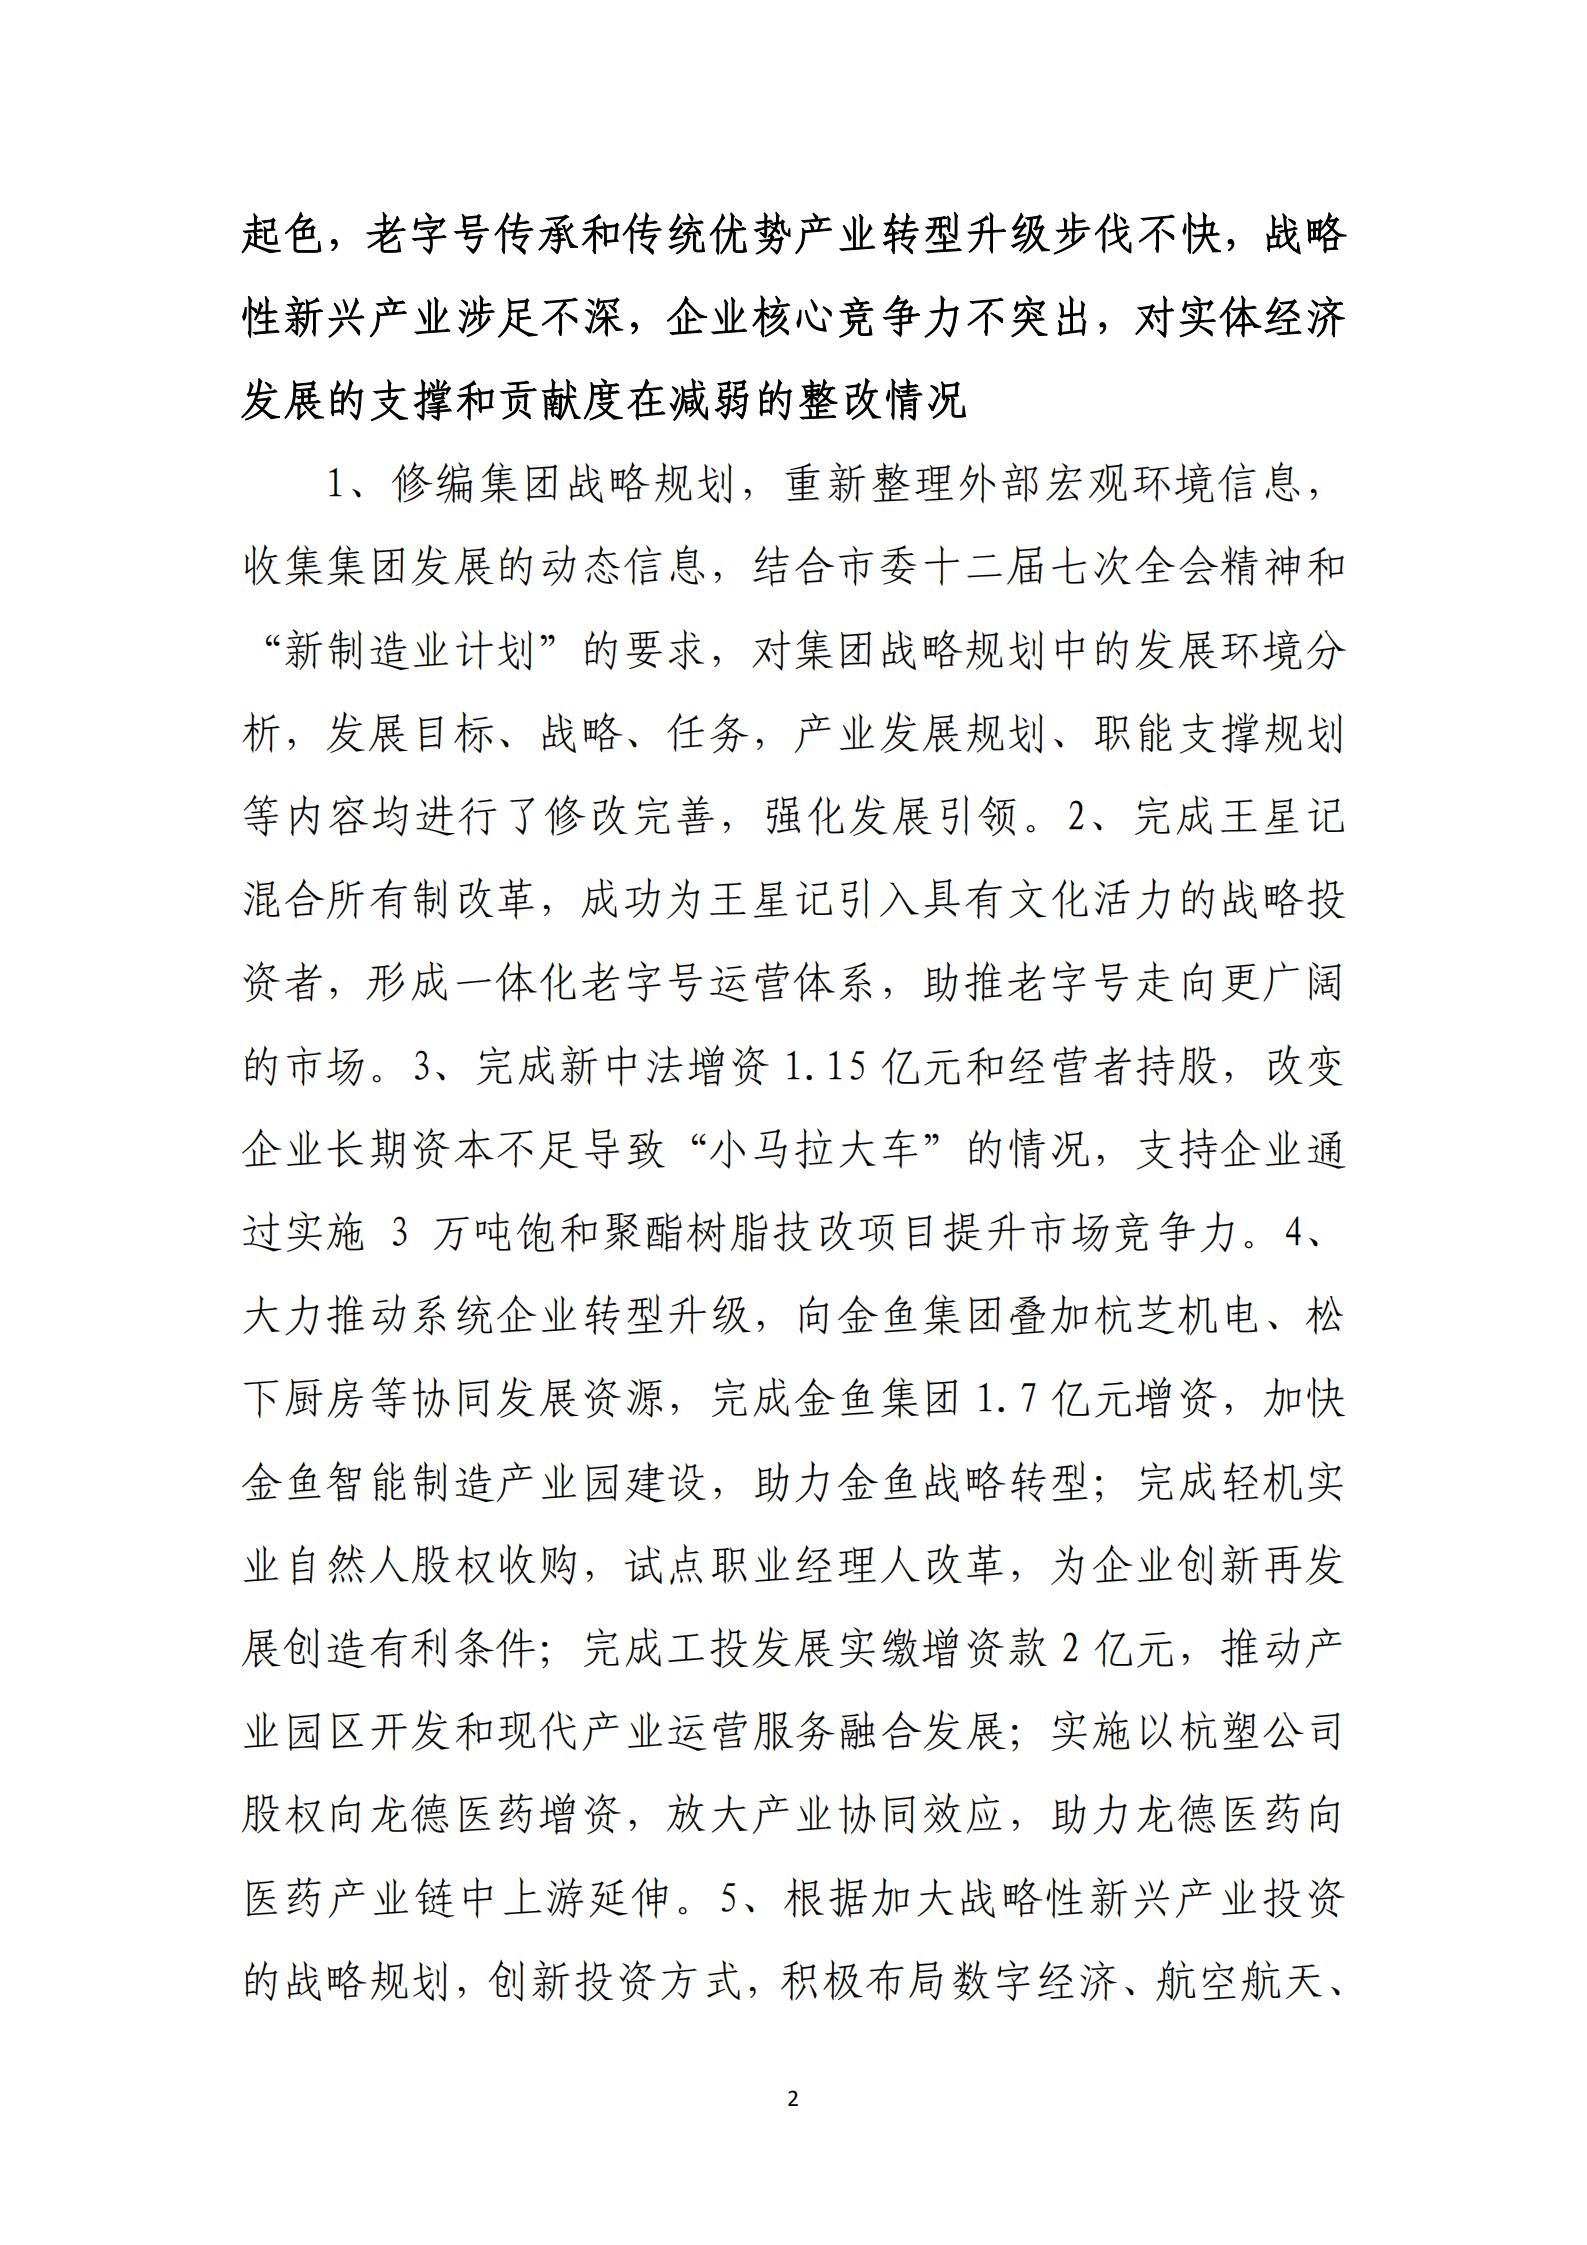 大阳城集团娱乐游戏党委关于巡察整改情况的通报_01.png